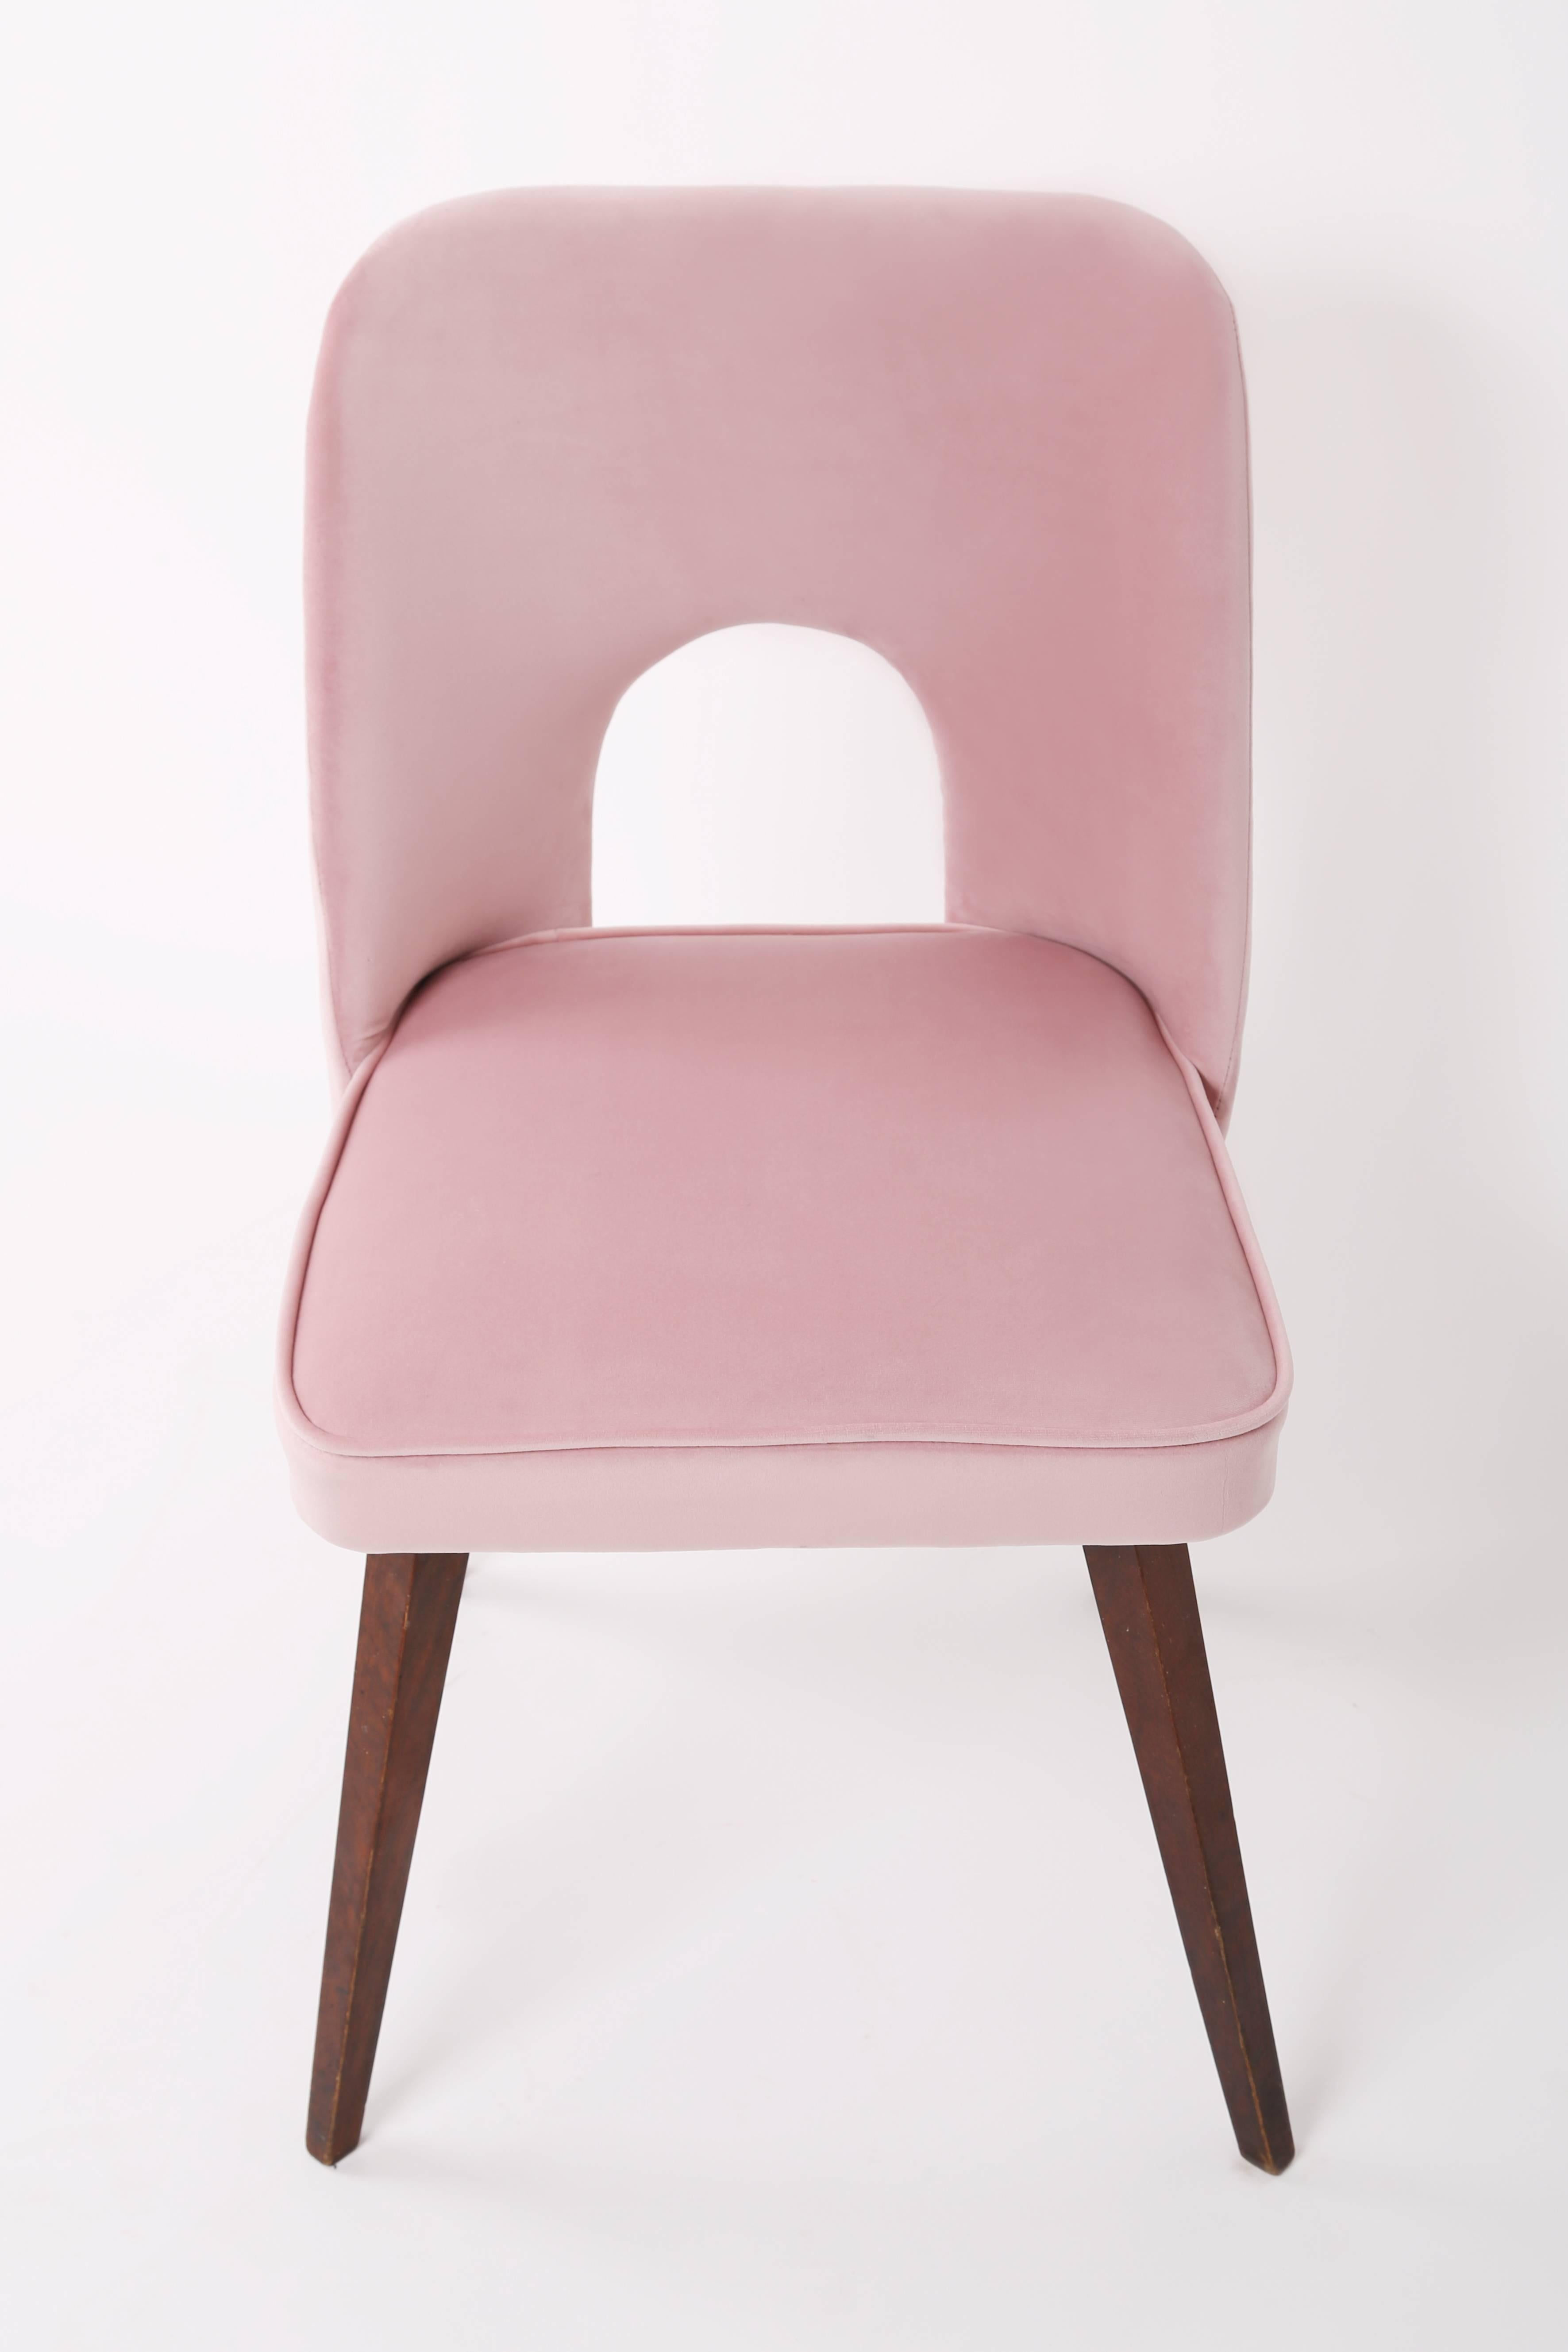 Polonais Ensemble de six chaises rose pâle « Shell », années 1960 en vente